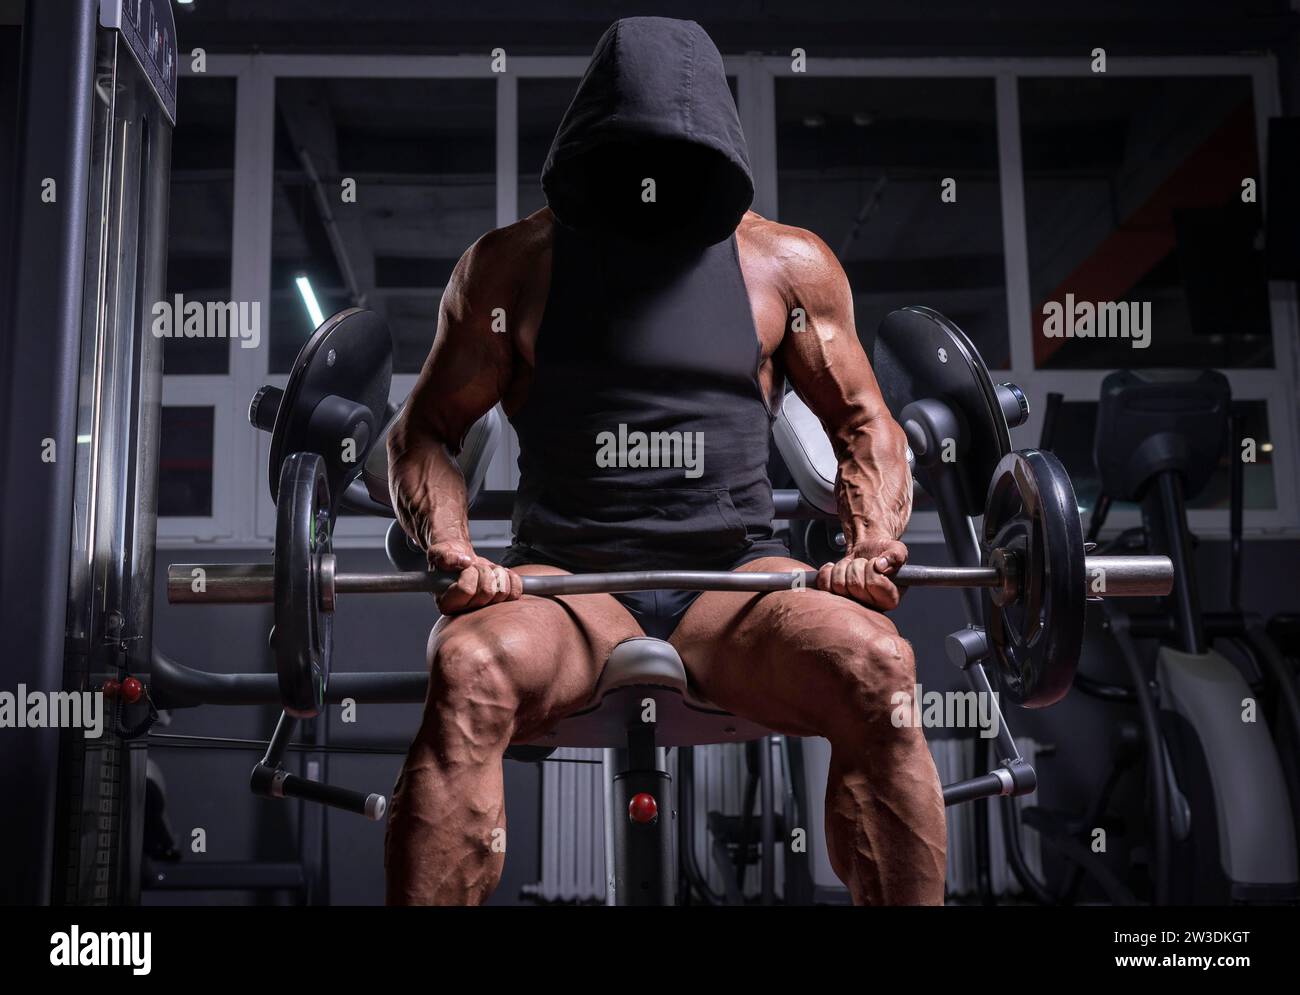 Kein Name Bild eines mächtigen Athleten in einem Hoodie, der auf einer Bank in einem Fitnessstudio sitzt. Fitness- und Bodybuilding-Konzept Stockfoto